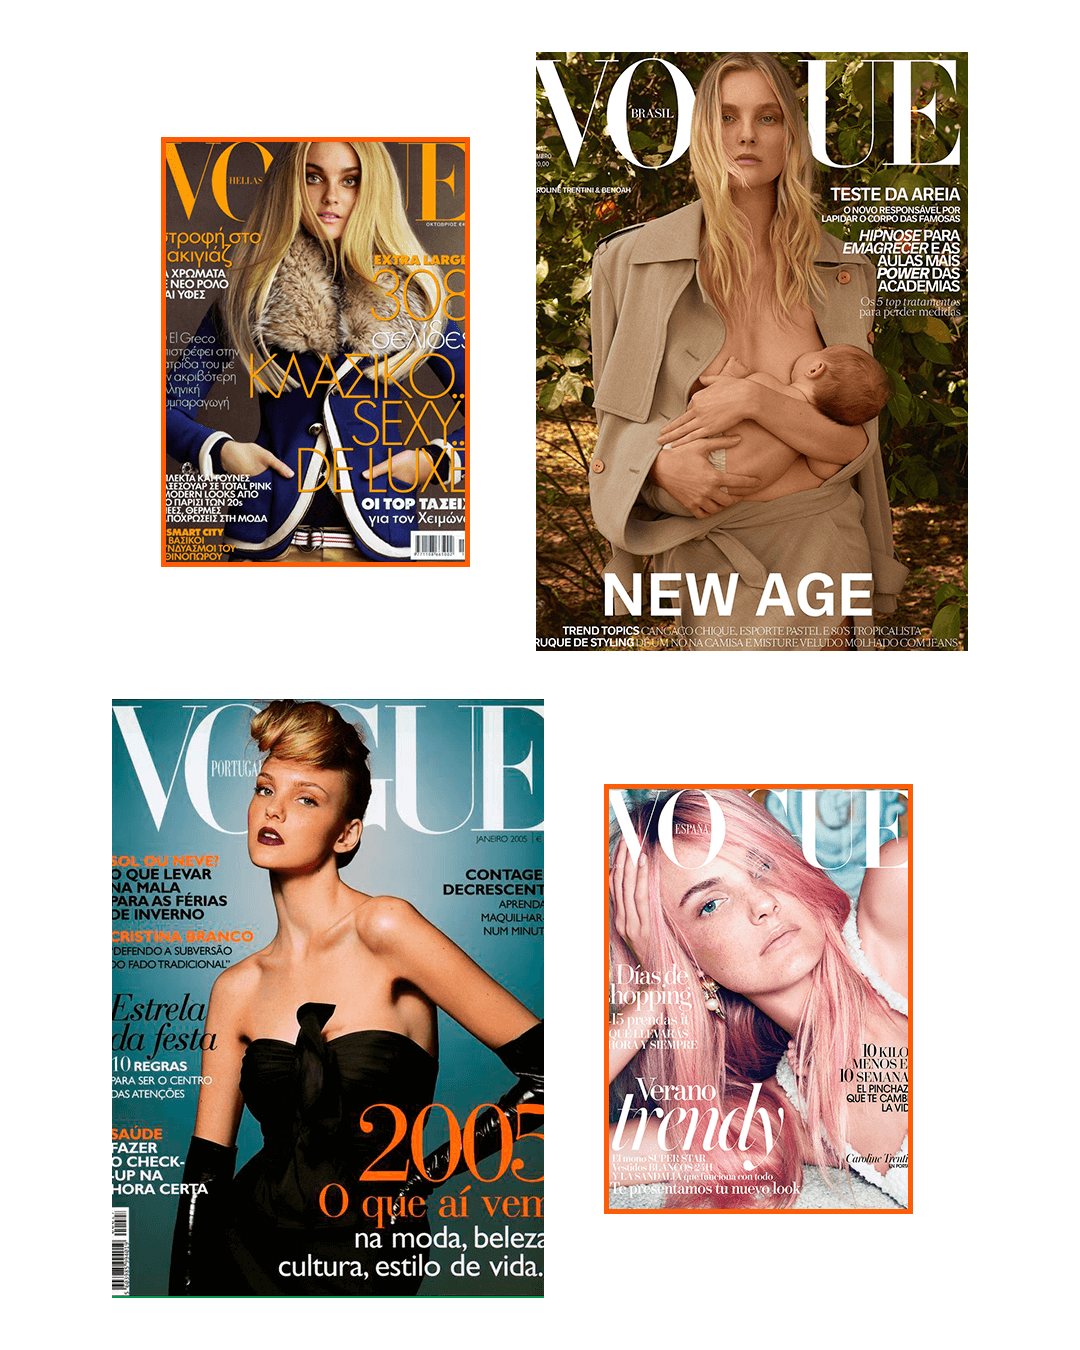 Carol Trentini - Vogue - 20 anos de carreira - revista - capa da Vogue - https://stealthelook.com.br